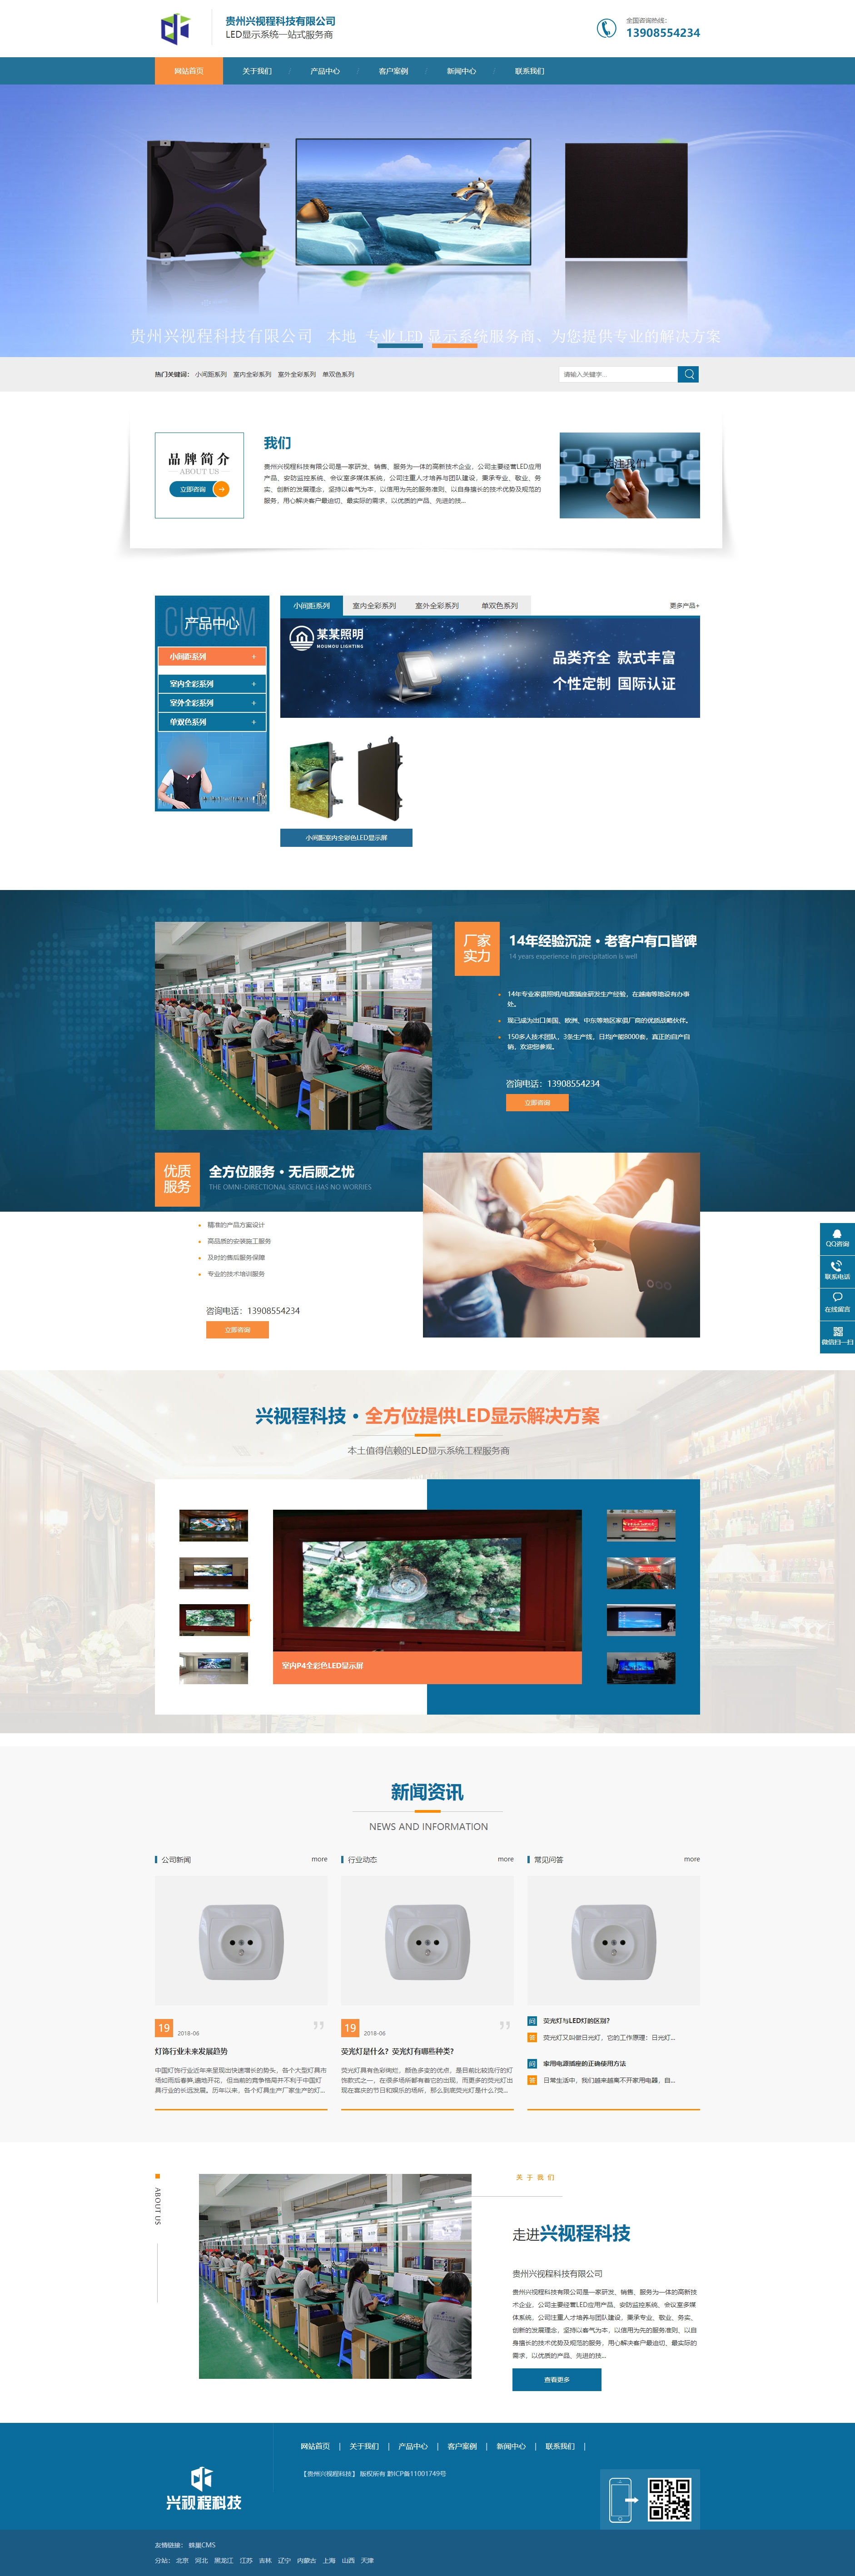 桐梓贵州兴视程科技有限公司 网站正式上线